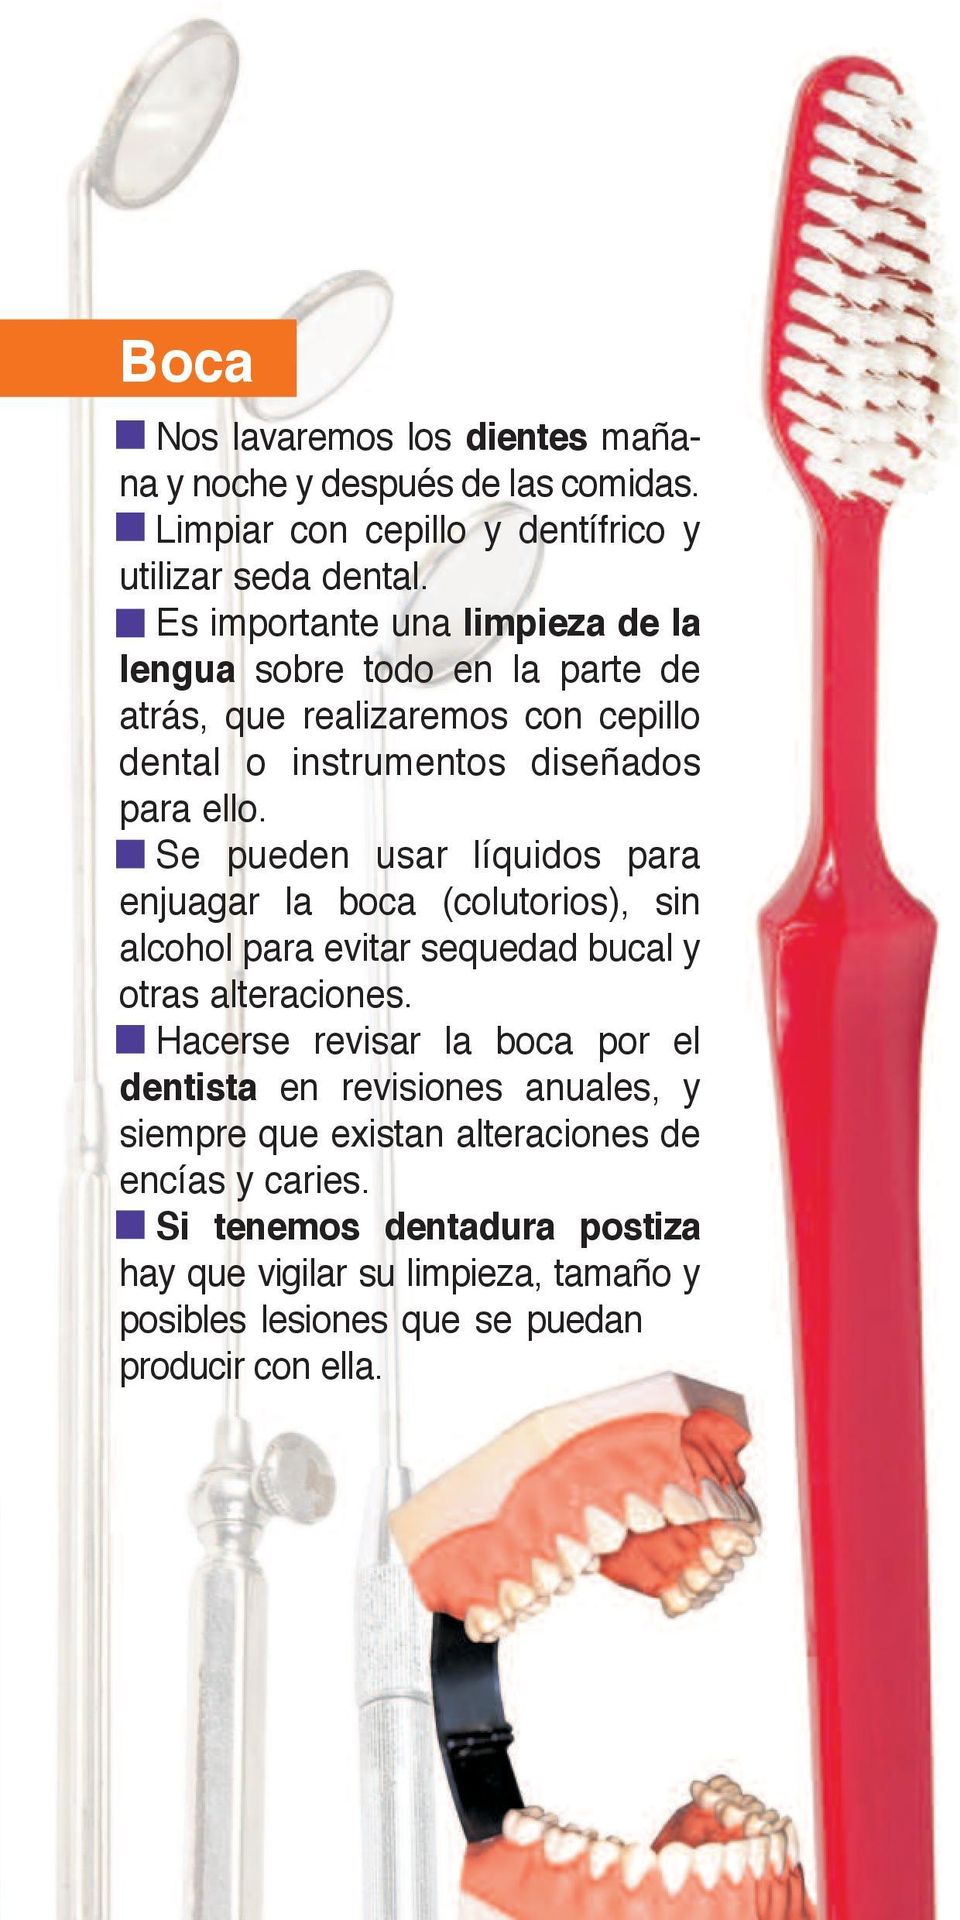 Se pueden usar líquidos para enjuagar la boca (colutorios), sin alcohol para evitar sequedad bucal y otras alteraciones.